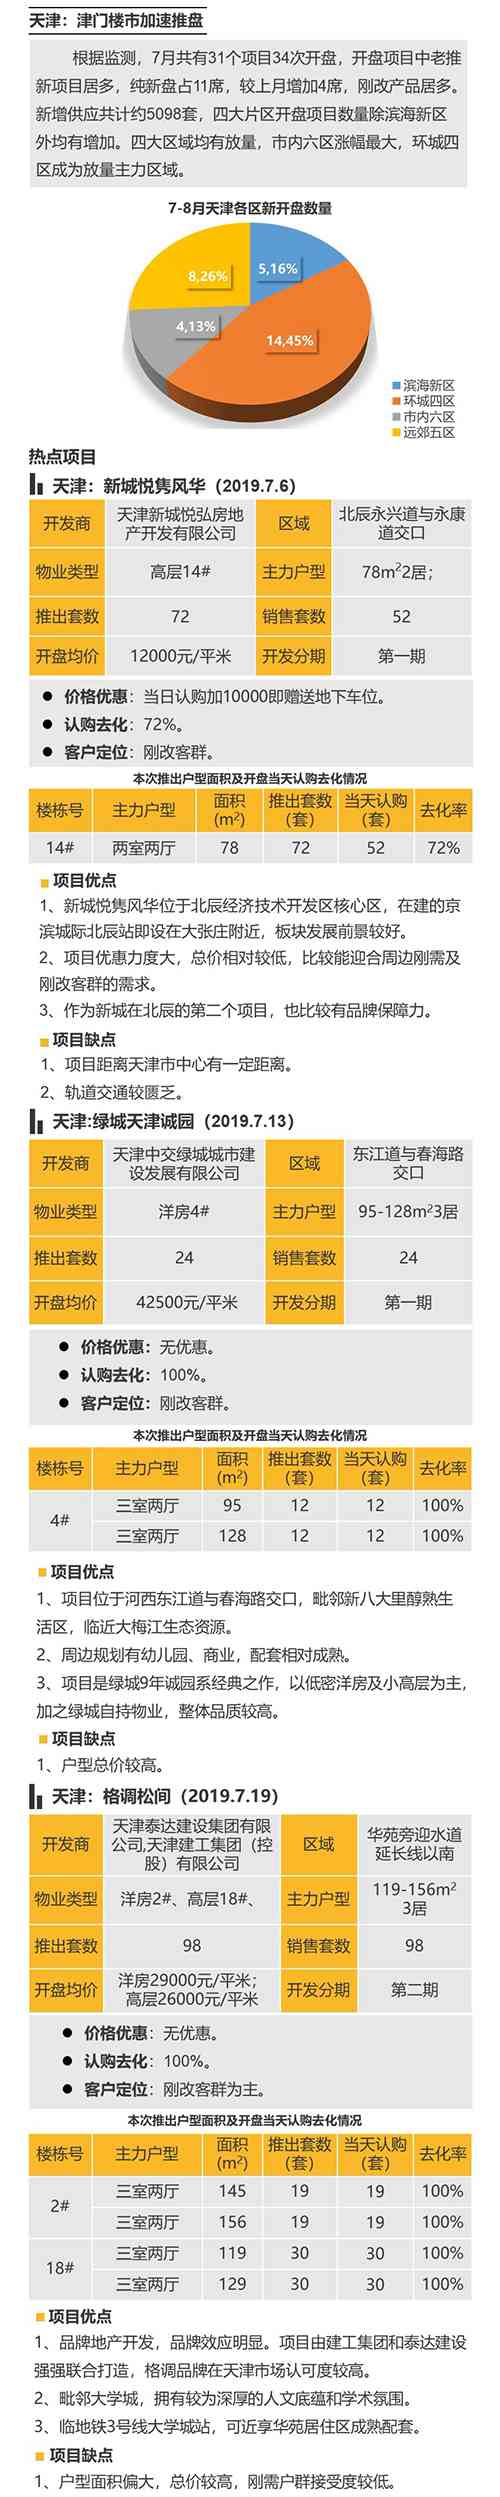 华北区新开盘谍报：北京青岛推盘量减少 改善产品占主流